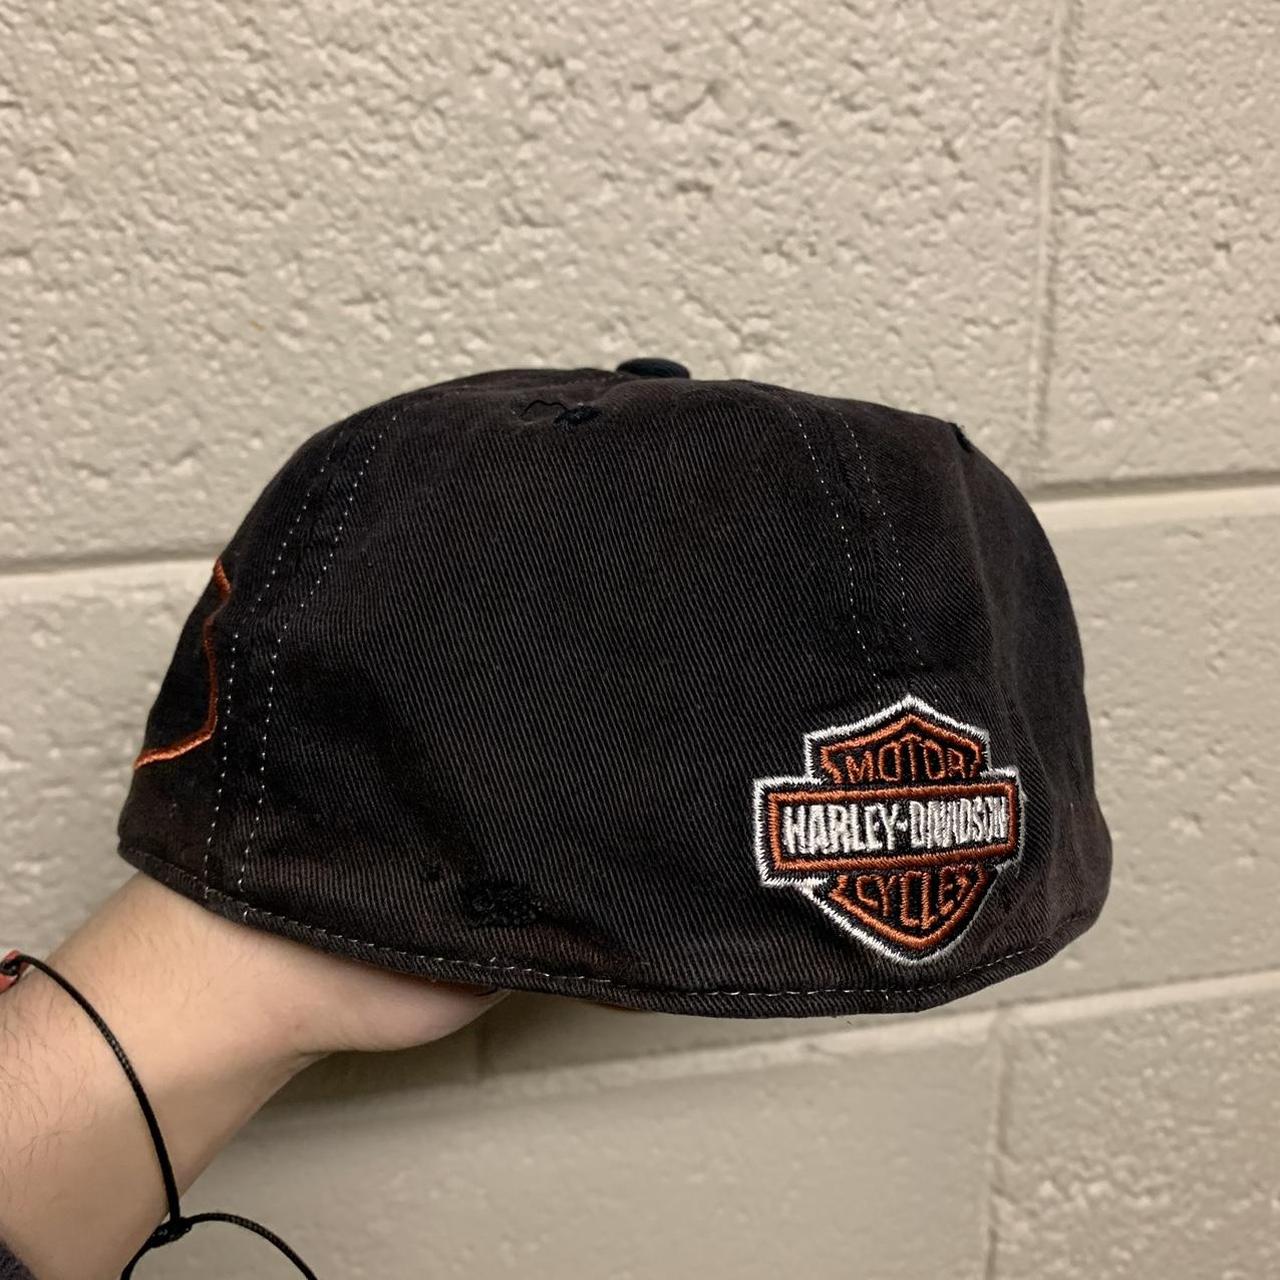 Harley Davidson Men's Black and Orange Hat (2)